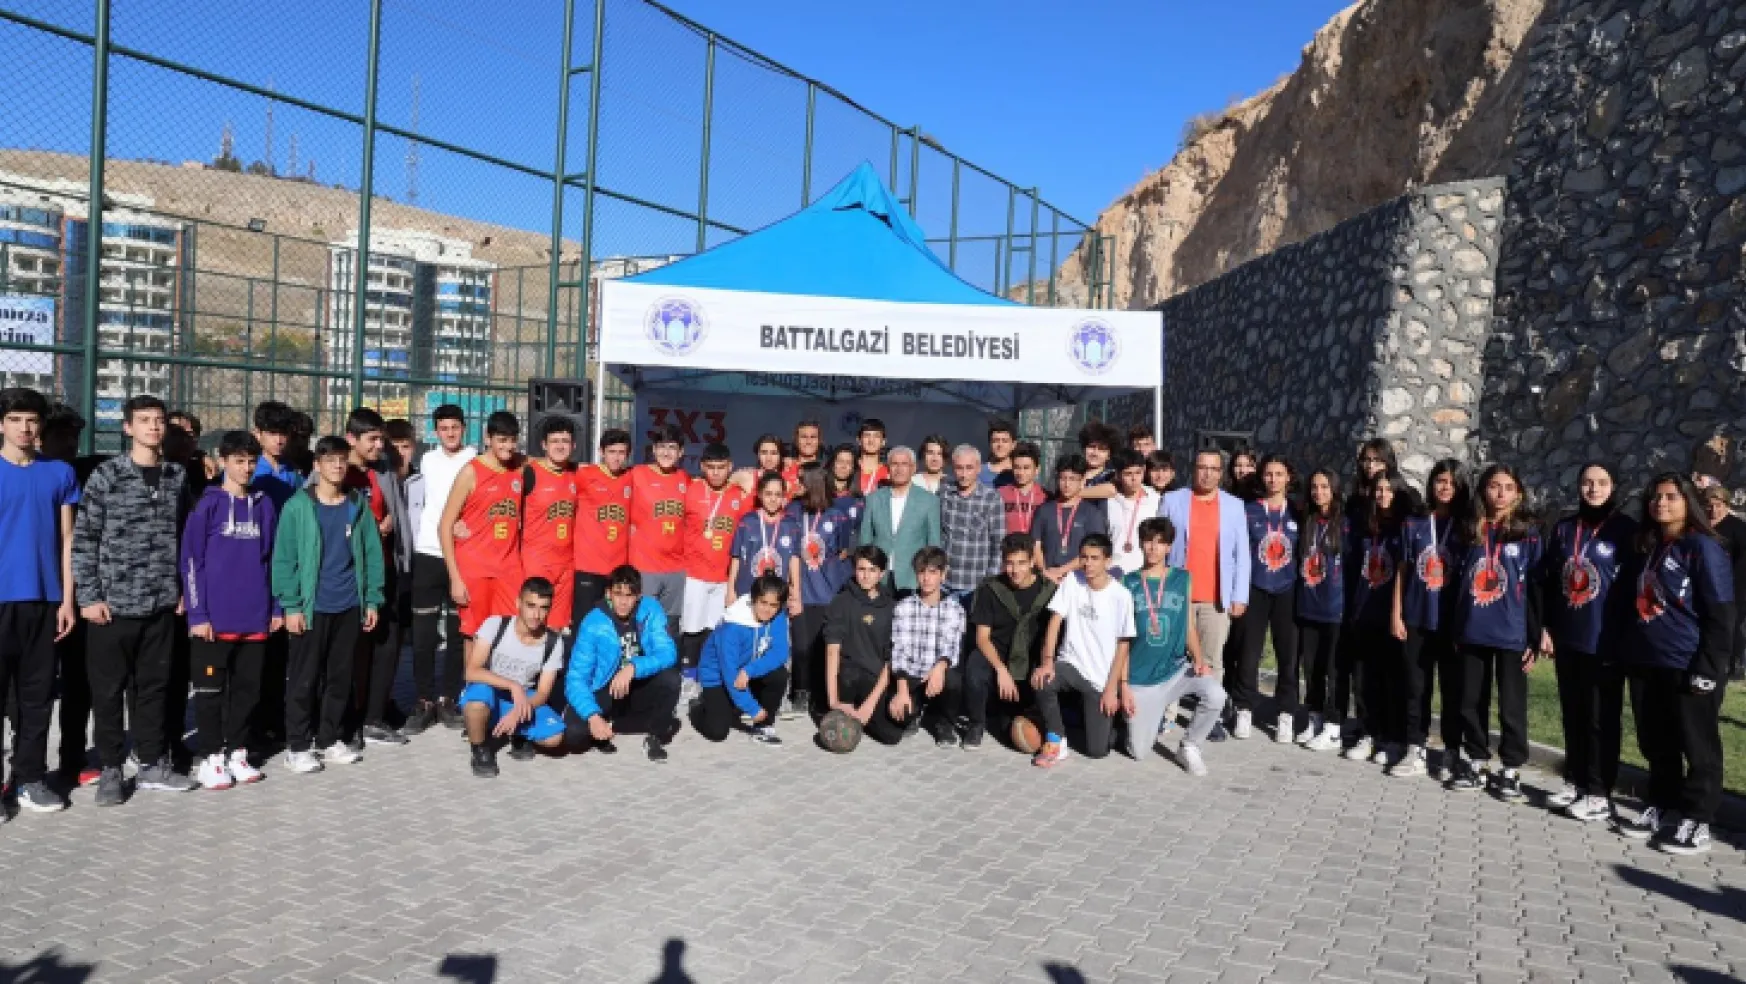 Battalgazi Belediyesi'nden 29 Ekim'e Özel Cumhuriyet Kupası Turnuvası